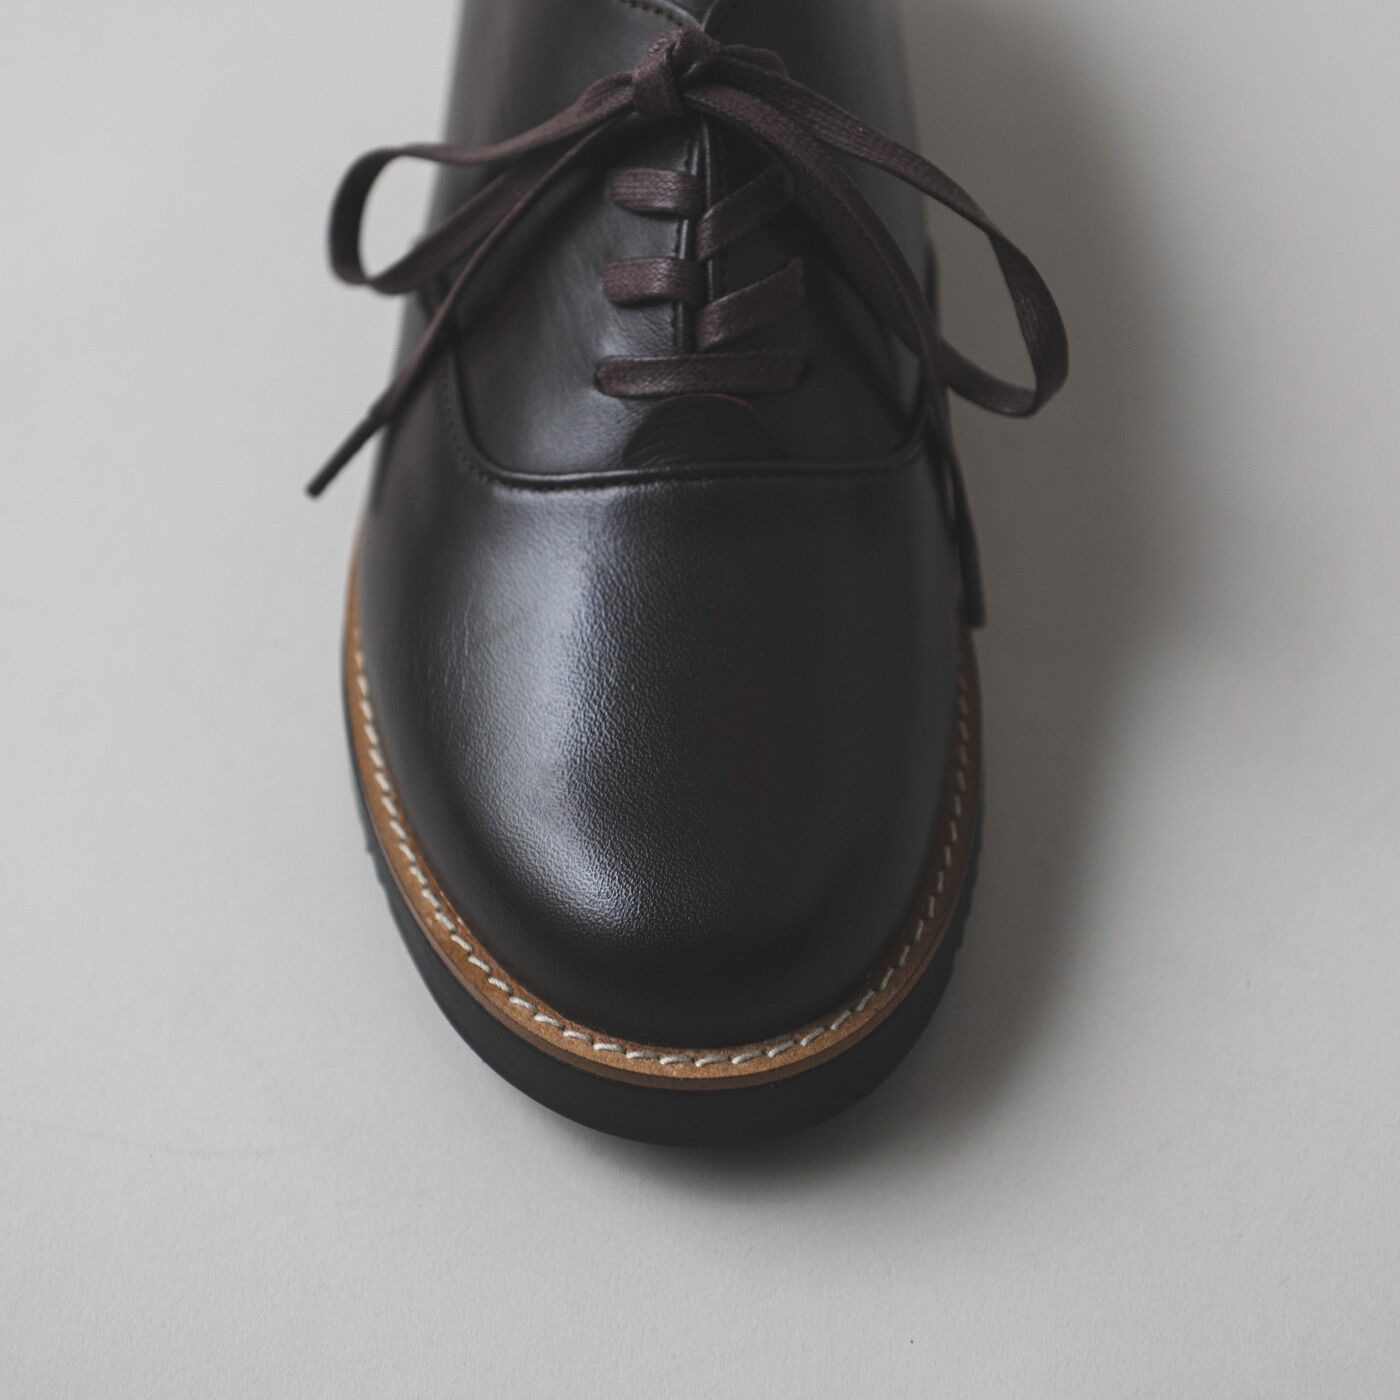 ＆Stories|長田の靴職人が作った 職人本革のポストマンシューズ〈ダークブラウン〉|やわらかめの革だから締め付け感もなく、履き心地も快適。革靴が苦手な人も、これは履けます！